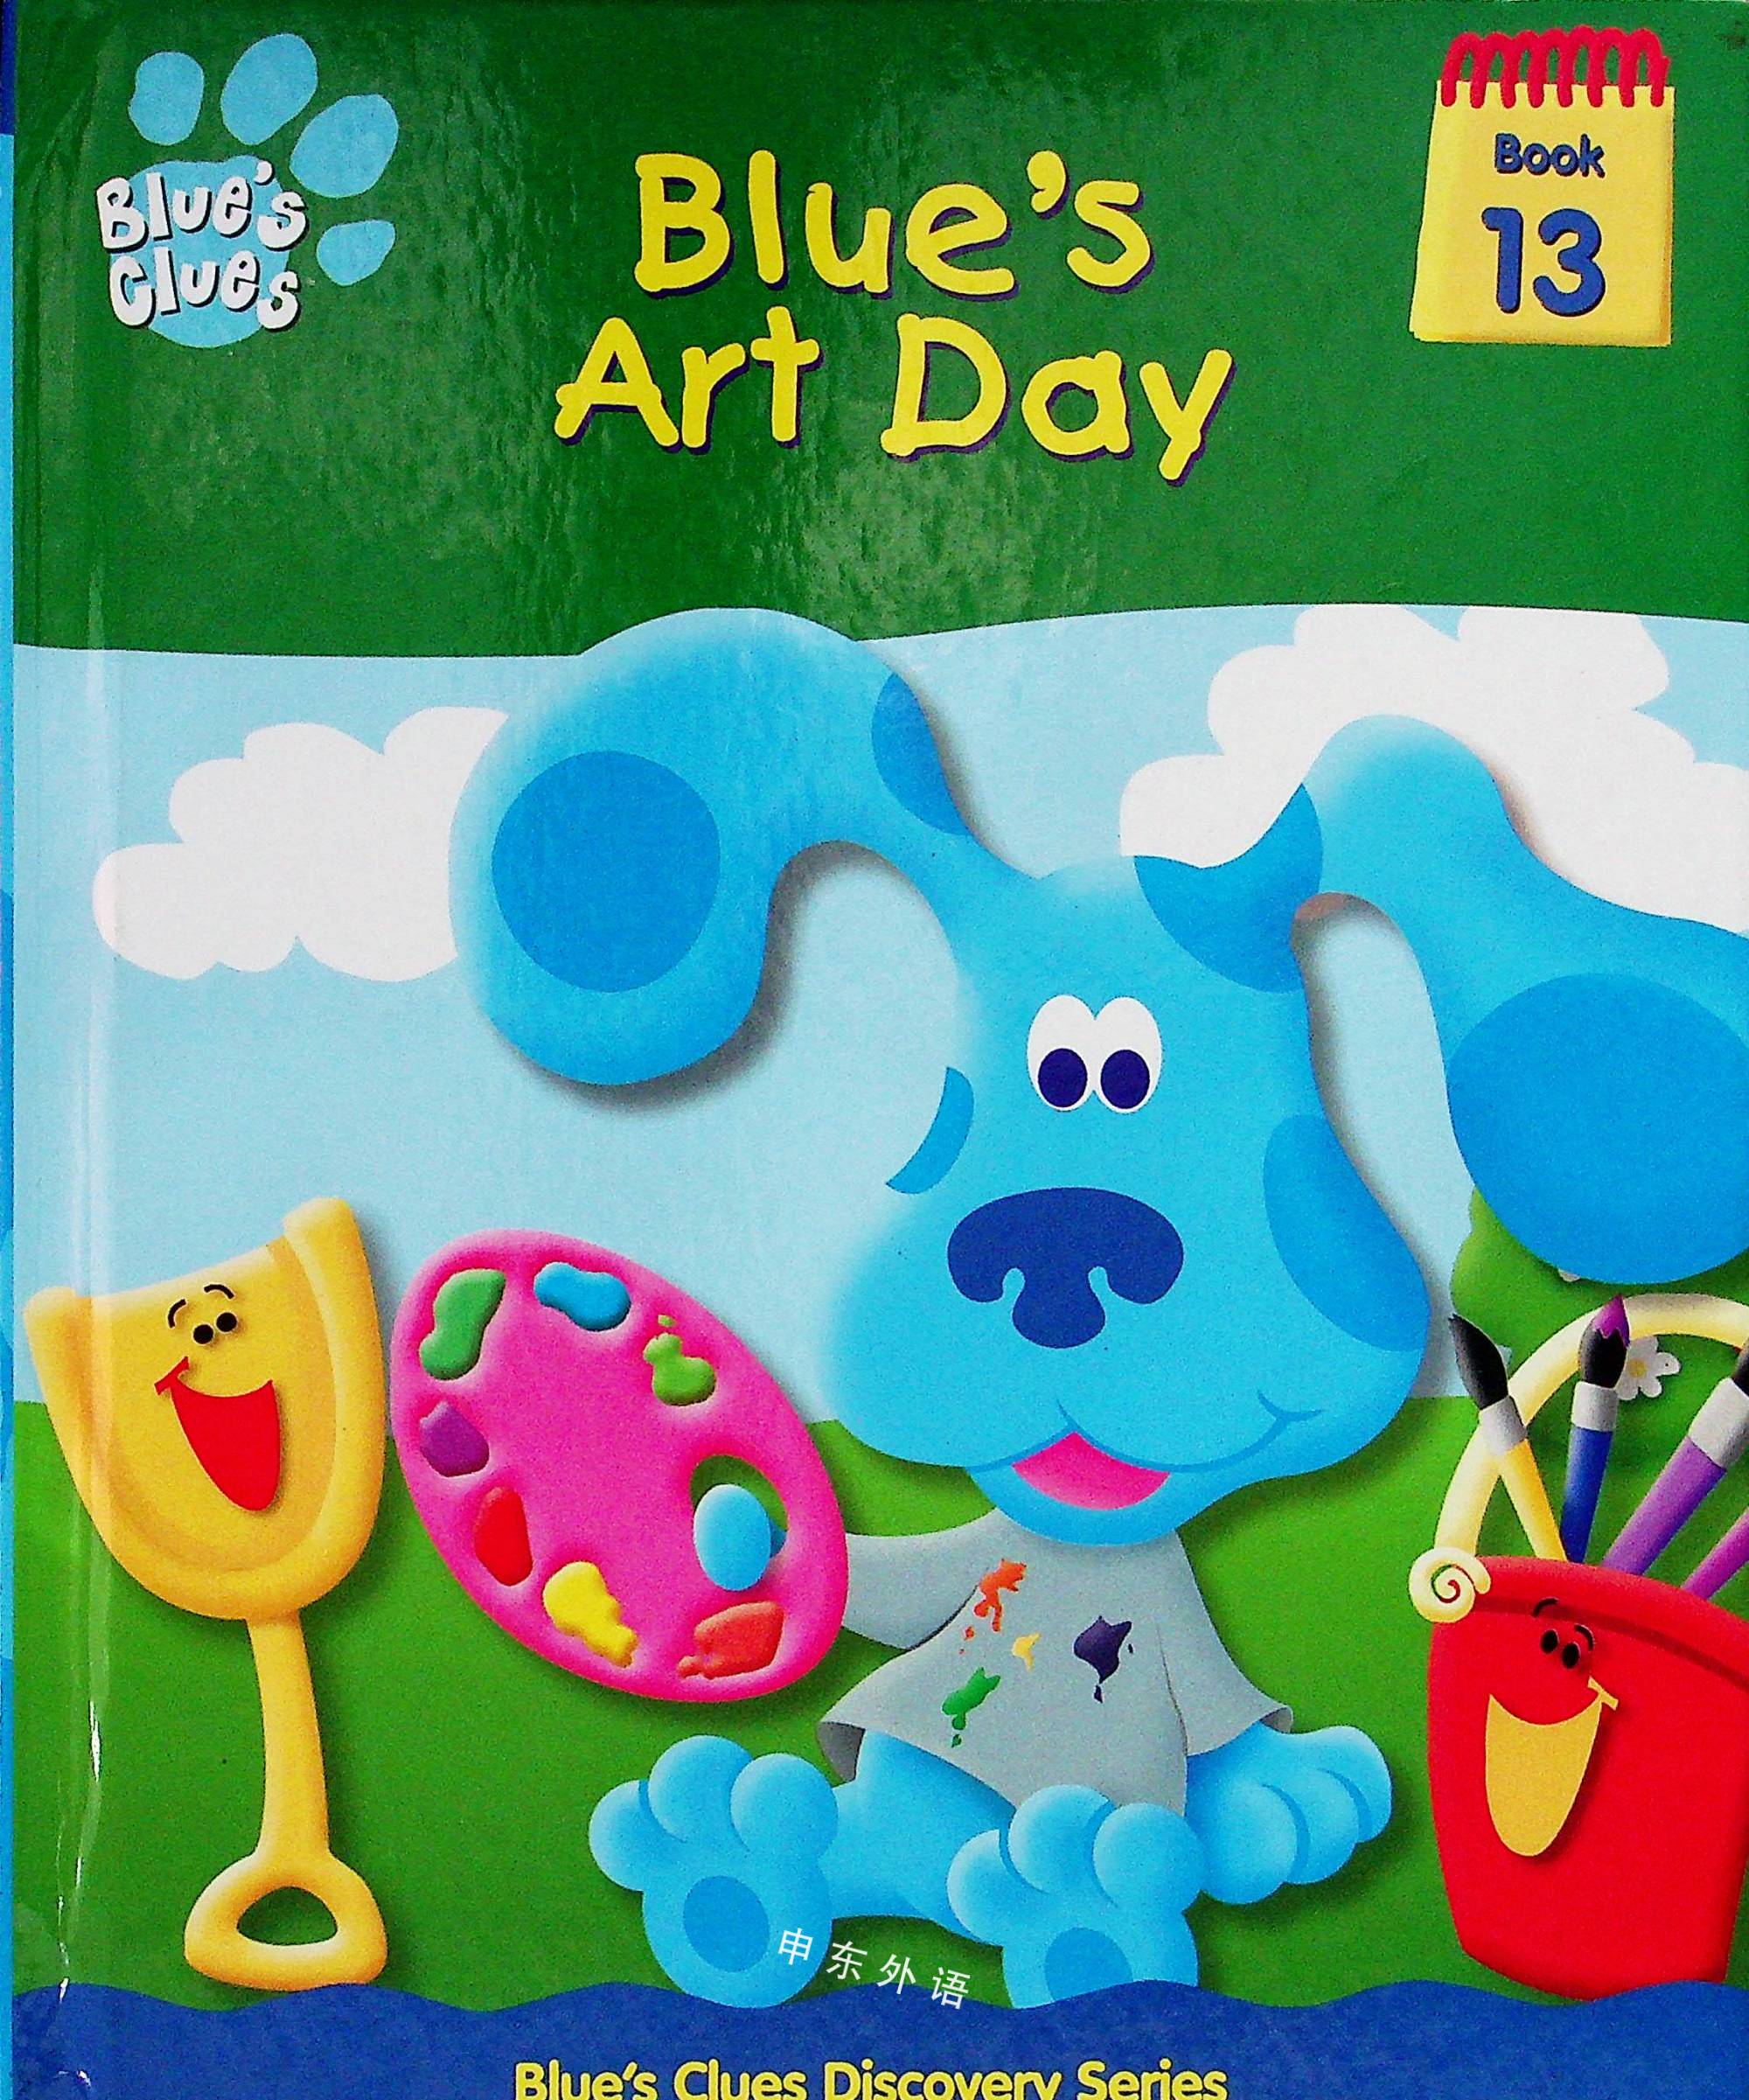 Blue S Art Day Blue S Clues Discovery Series 蓝色的线索 电视 热门人物 儿童图书 进口图书 进口书 原版书 绘本书 英文原版图书 儿童纸板书 外语图书 进口儿童书 原版儿童书